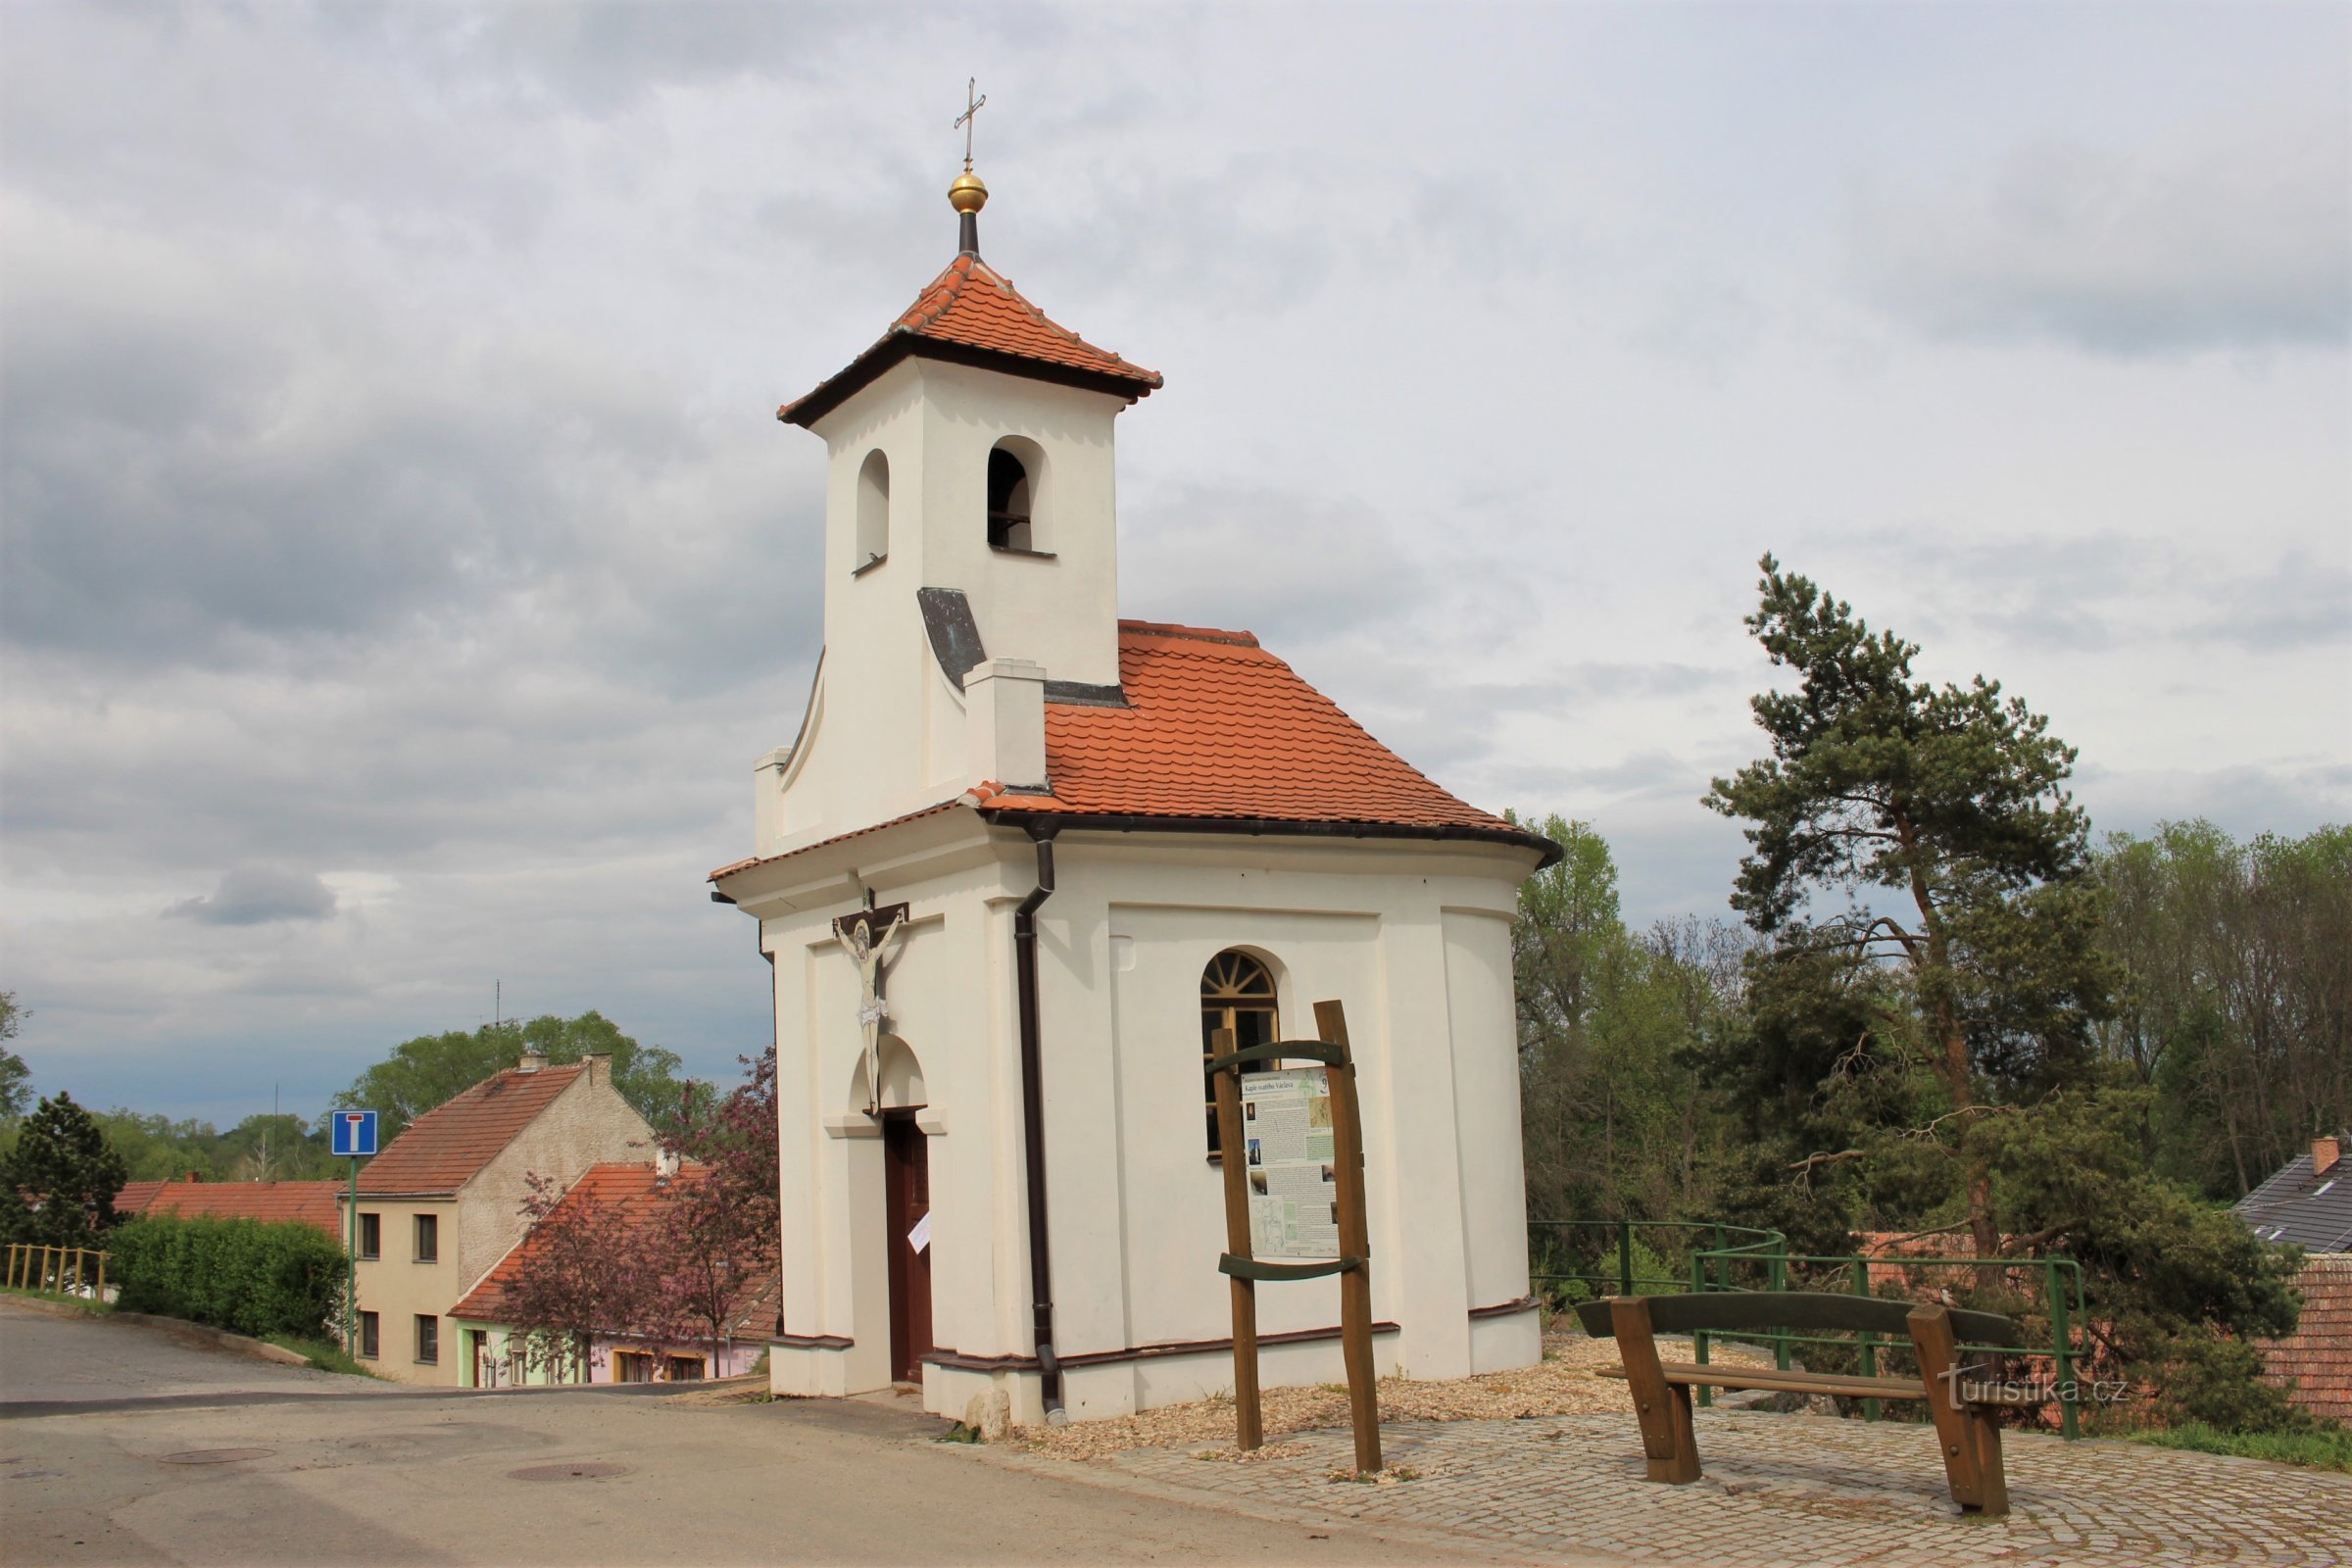 Kapela sv. Václava nakon rekonstrukcije i modifikacije okolnog prostora